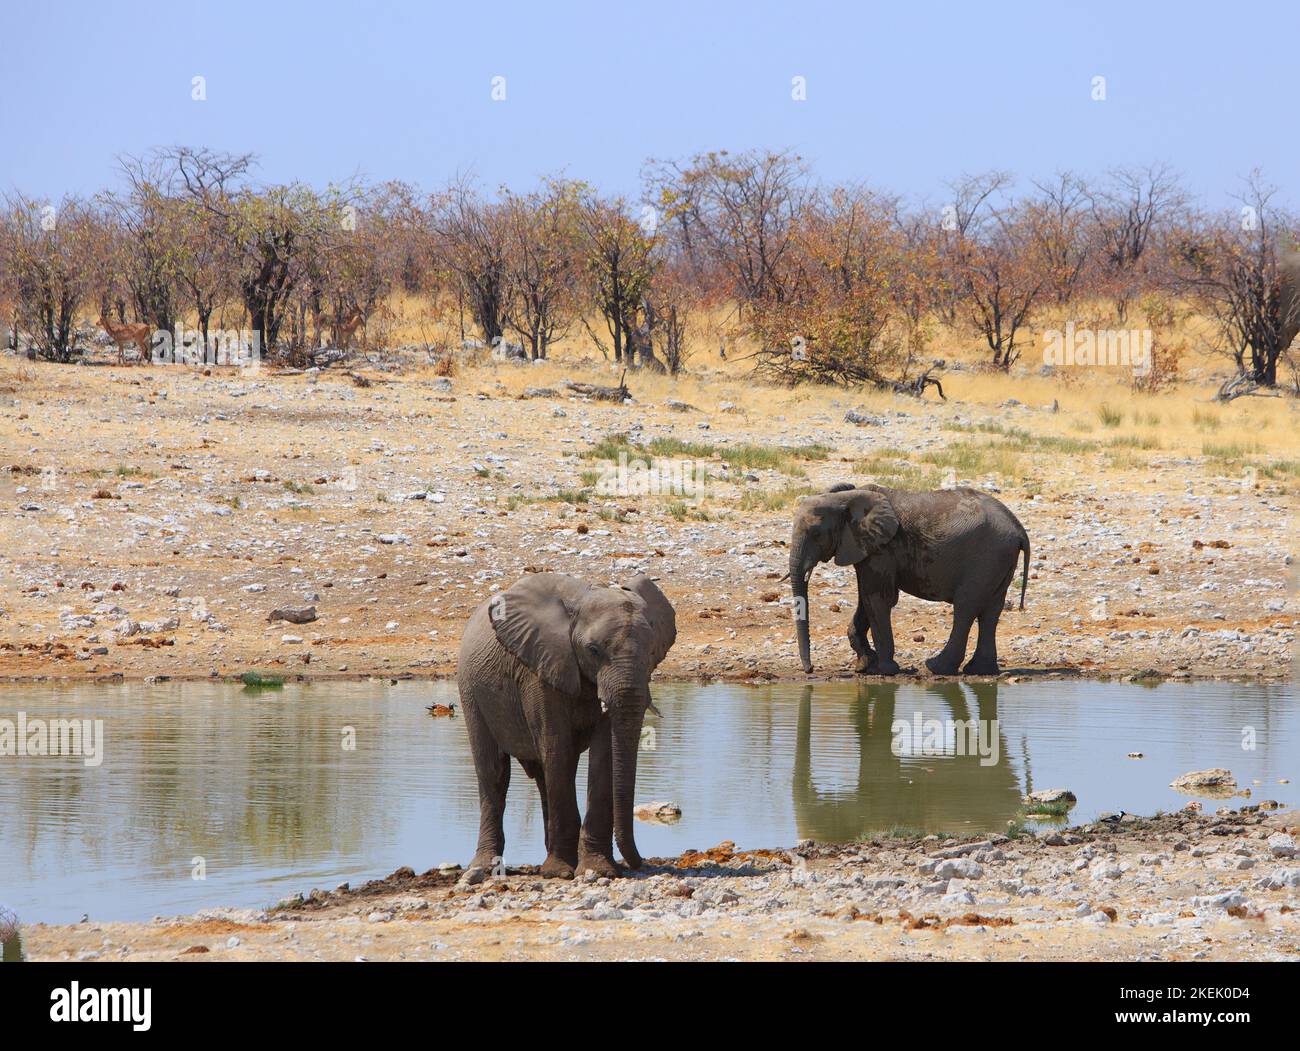 Hübsches Wasserloch mit Buschhintergrund mit zwei afrikanischen Elefanten, die am Rand eines Wasserlochs stehen Stockfoto